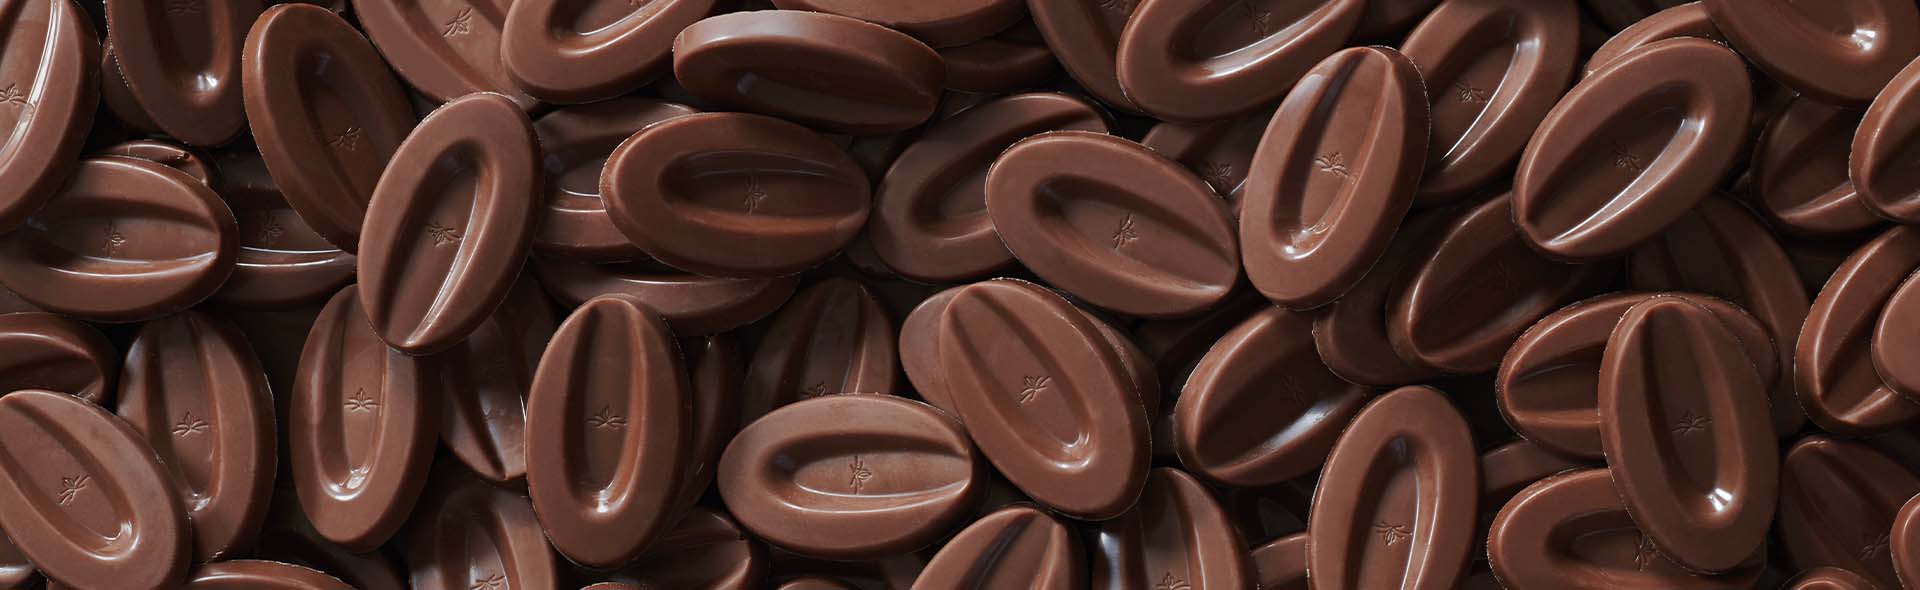 SUCETTES EN CHOCOLAT POUR CHOCOLAT CHAUD GOURMAND - Les recettes